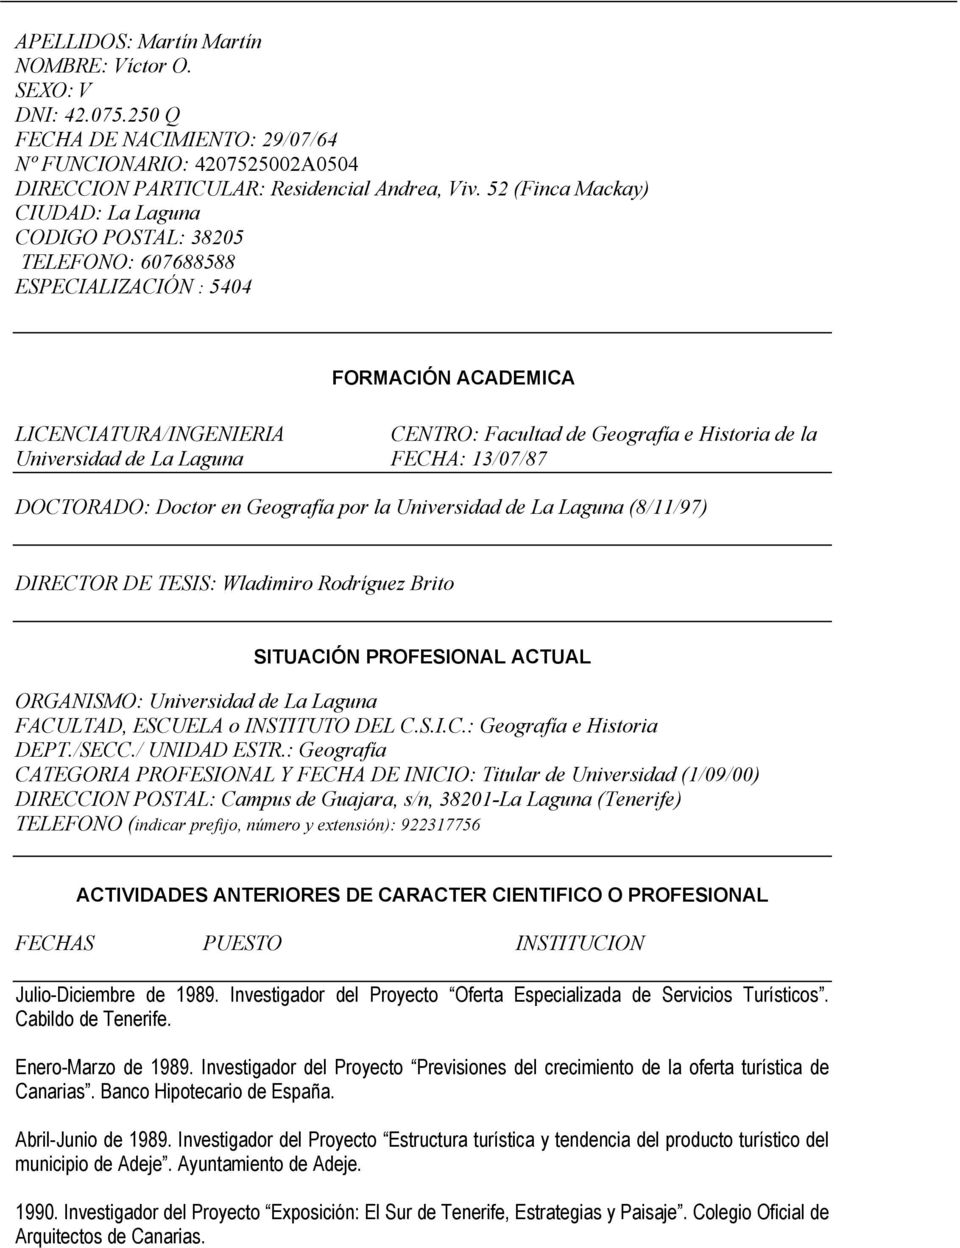 Universidad de La Laguna FECHA: 13/07/87 DOCTORADO: Doctor en Geografía por la Universidad de La Laguna (8/11/97) DIRECTOR DE TESIS: Wladimiro Rodríguez Brito SITUACIÓN PROFESIONAL ACTUAL ORGANISMO: